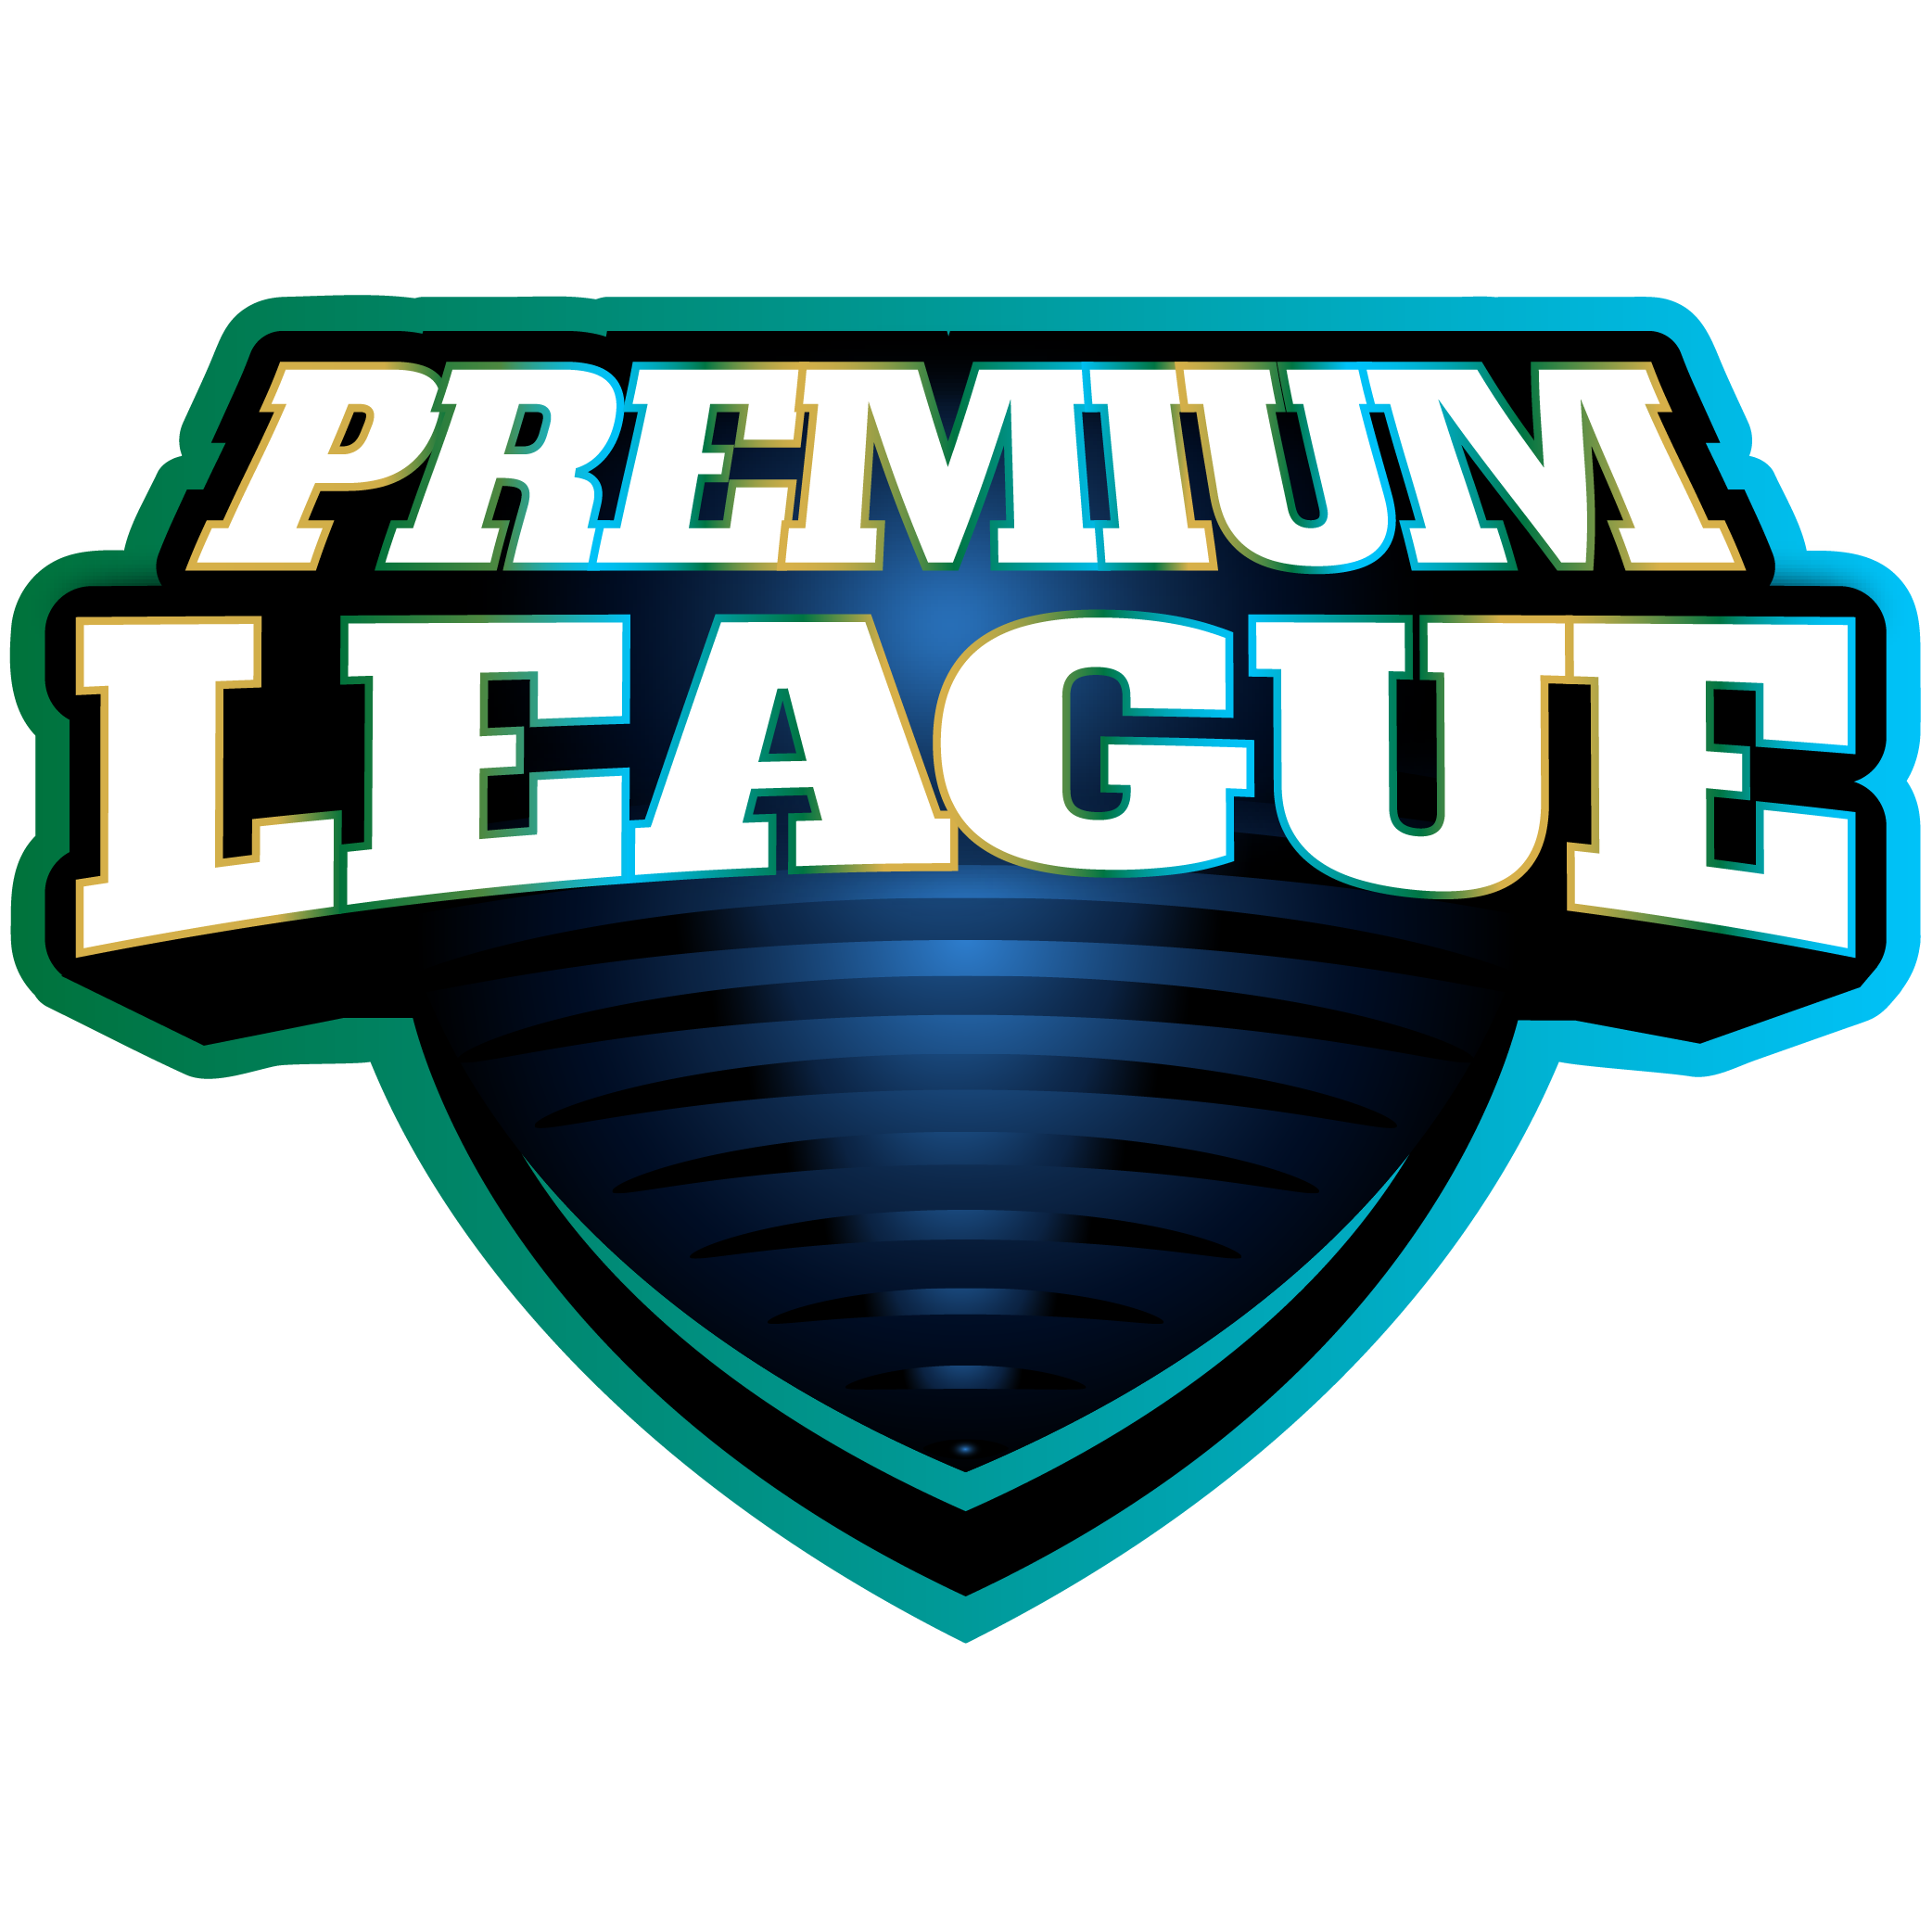 Premium League